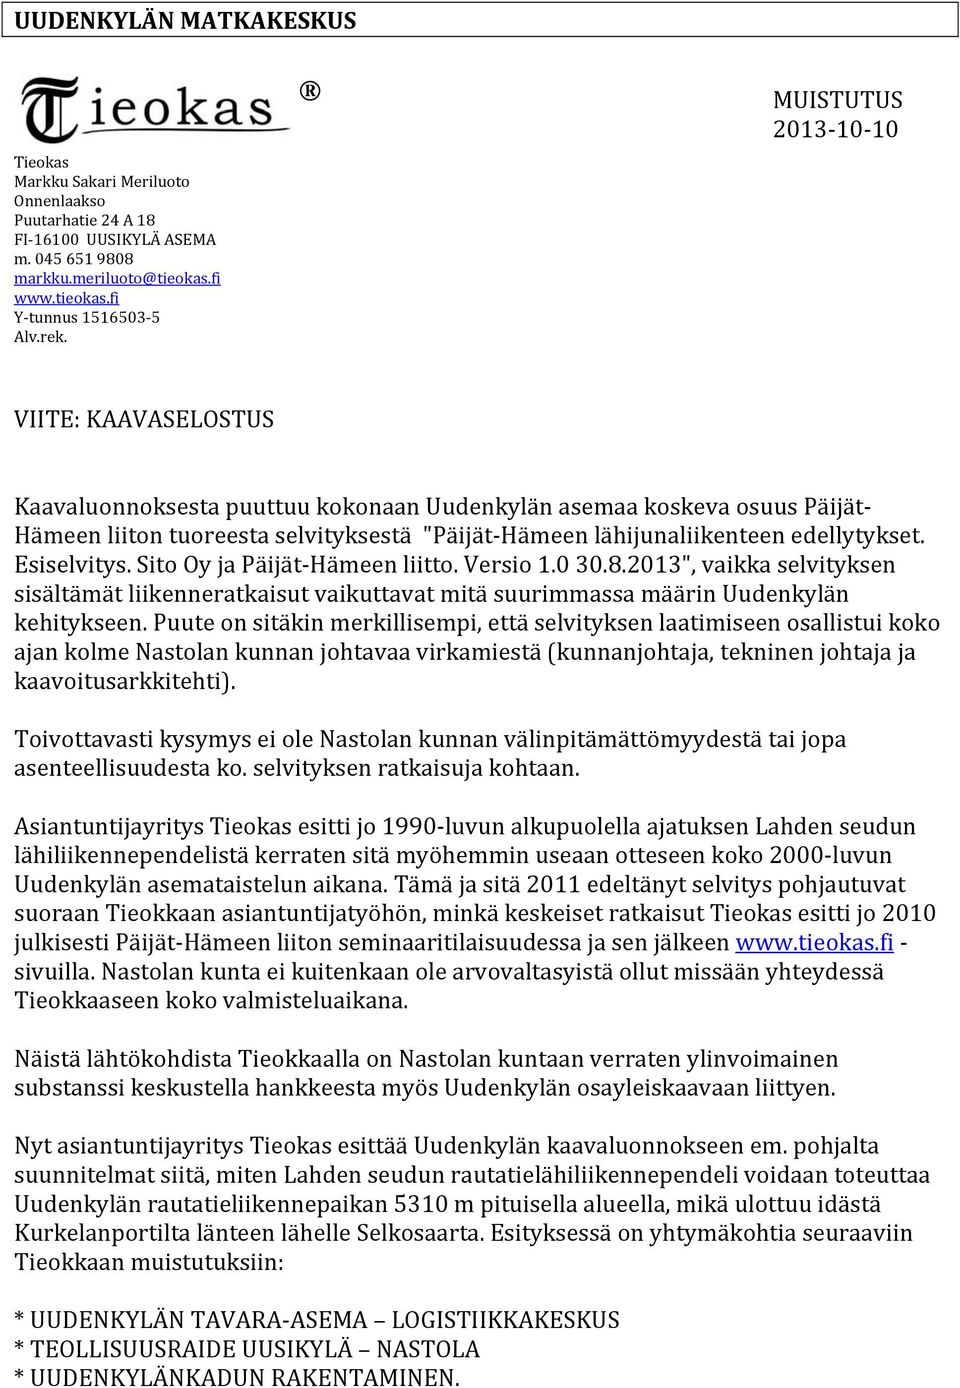 edellytykset. Esiselvitys. Sito Oy ja Päijät Hämeen liitto. Versio 1.0 30.8.2013", vaikka selvityksen sisältämät liikenneratkaisut vaikuttavat mitä suurimmassa määrin Uudenkylän kehitykseen.